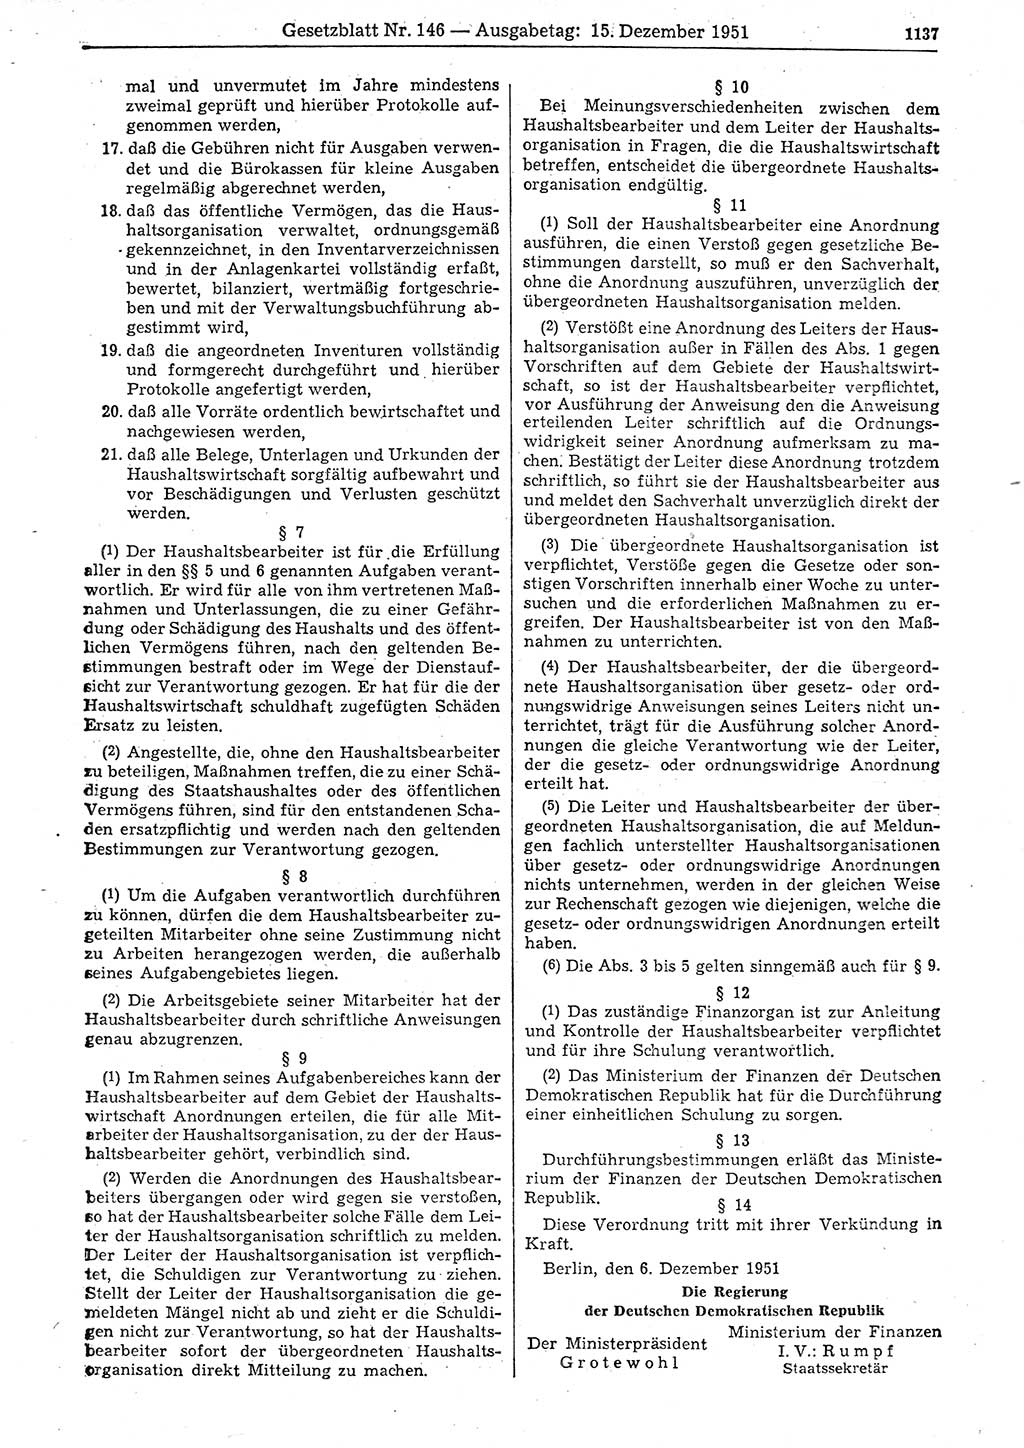 Gesetzblatt (GBl.) der Deutschen Demokratischen Republik (DDR) 1951, Seite 1137 (GBl. DDR 1951, S. 1137)